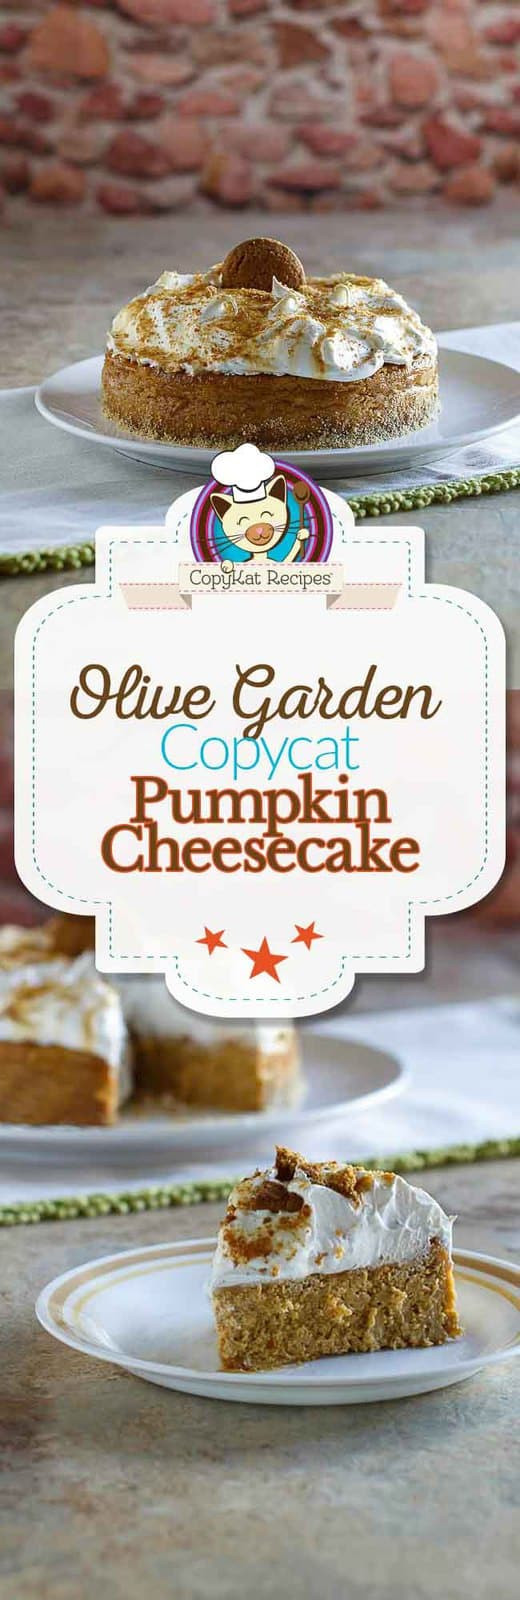 Olive Garden Pumpkin Cheesecake Recipe
 when does olive garden have pumpkin cheesecake